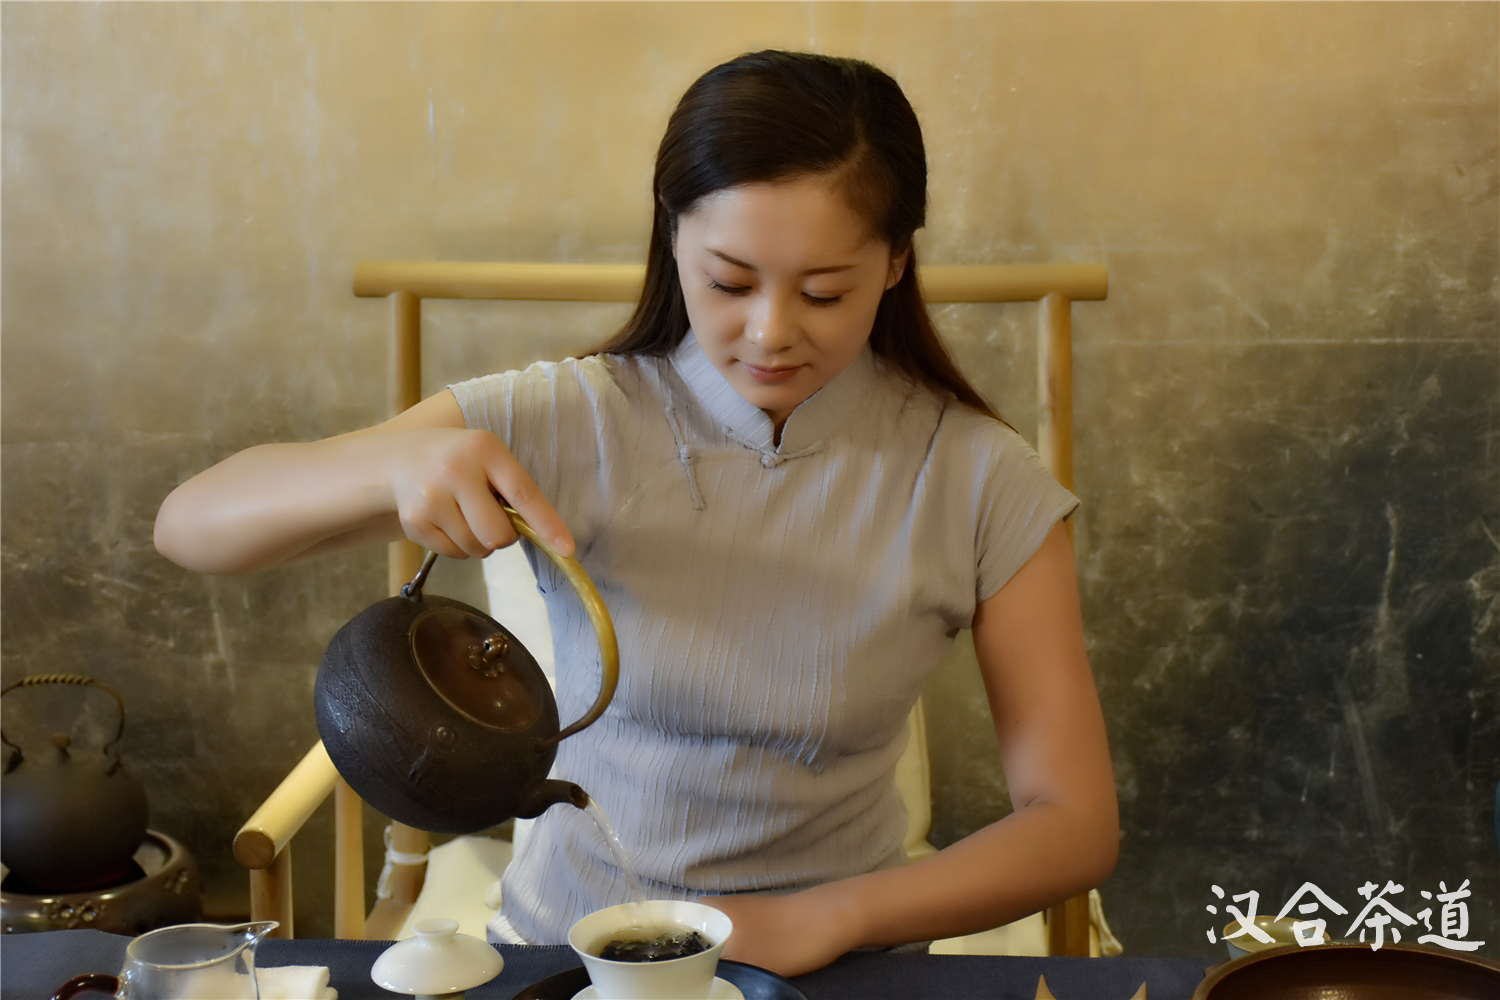 汉合茶道:喝茶的女人原来可以那么美!